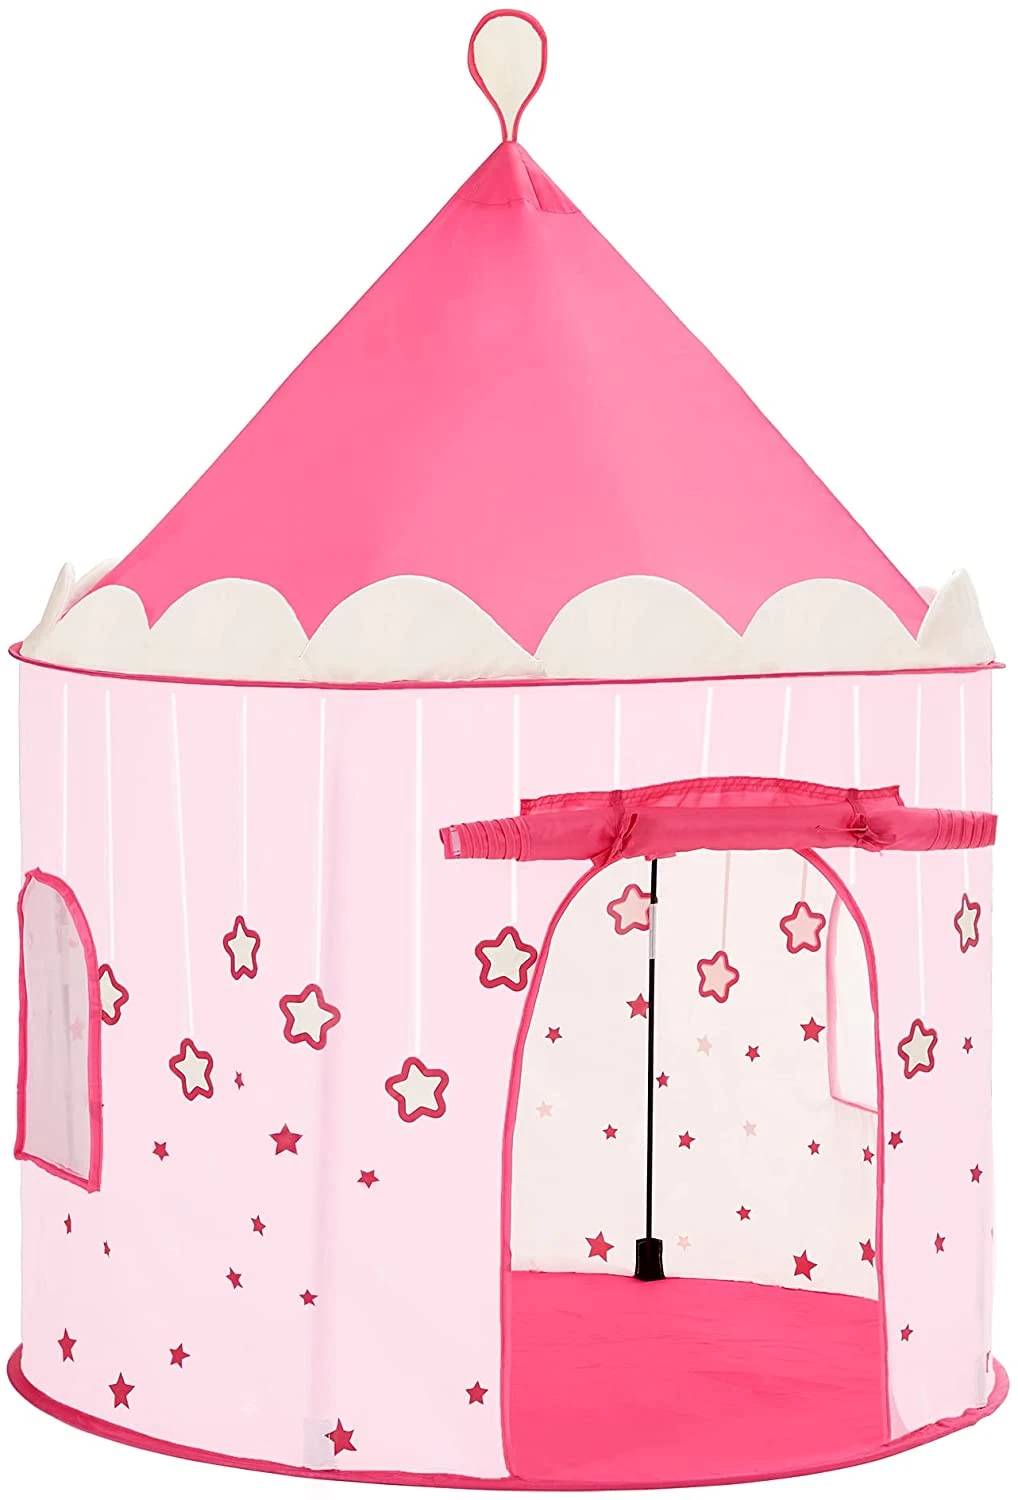 ritme enthousiast reparatie Speeltent, prinsessenkasteel voor meisjes, peuters, speelhuisje voor binnen  en buiten, Pop-UP indianentent met draagtas, geschenk voor kinderen, roze -  SimpleDeal.nl